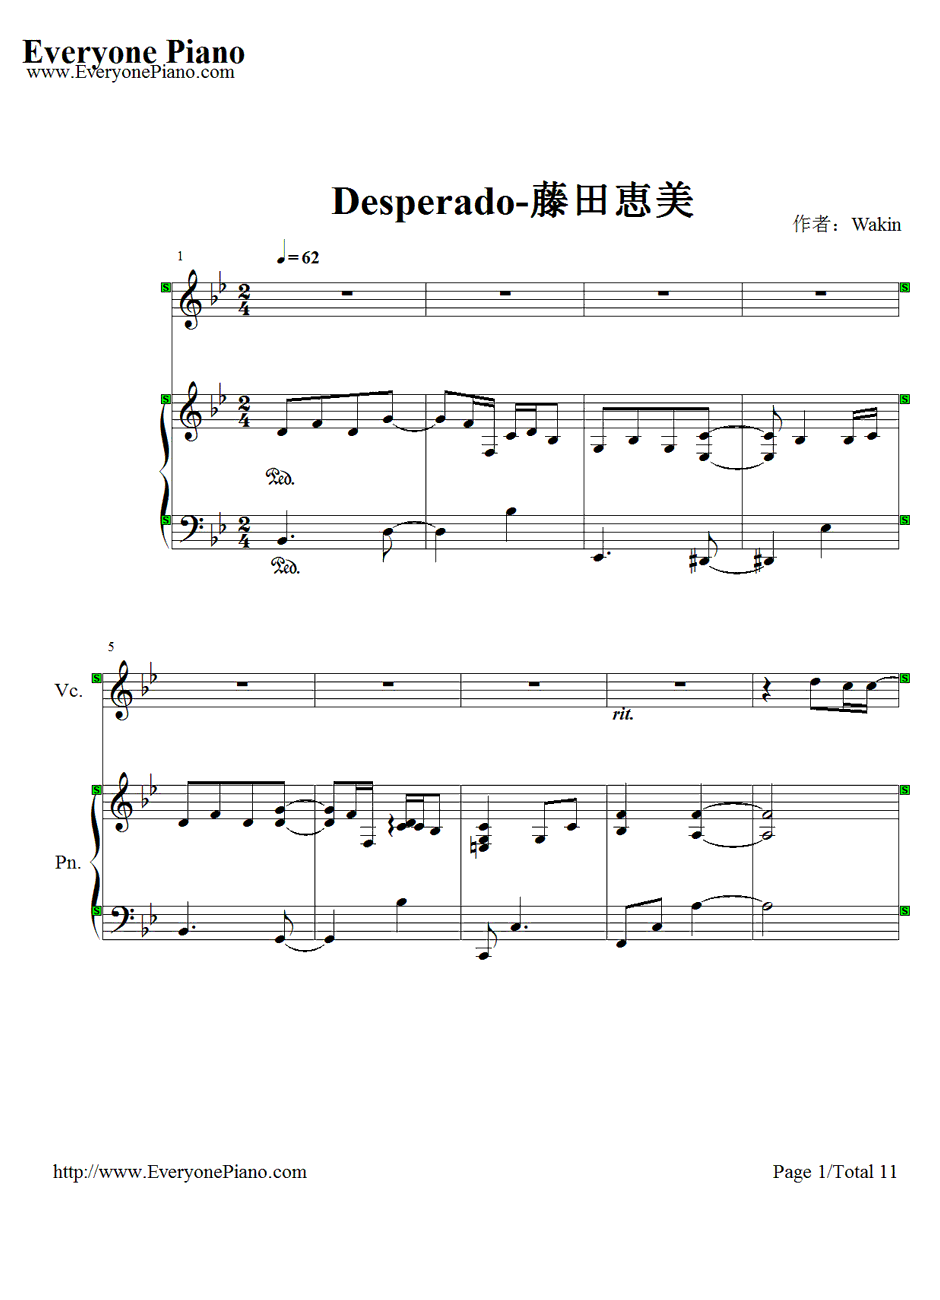 Desperado钢琴谱-藤田惠美1